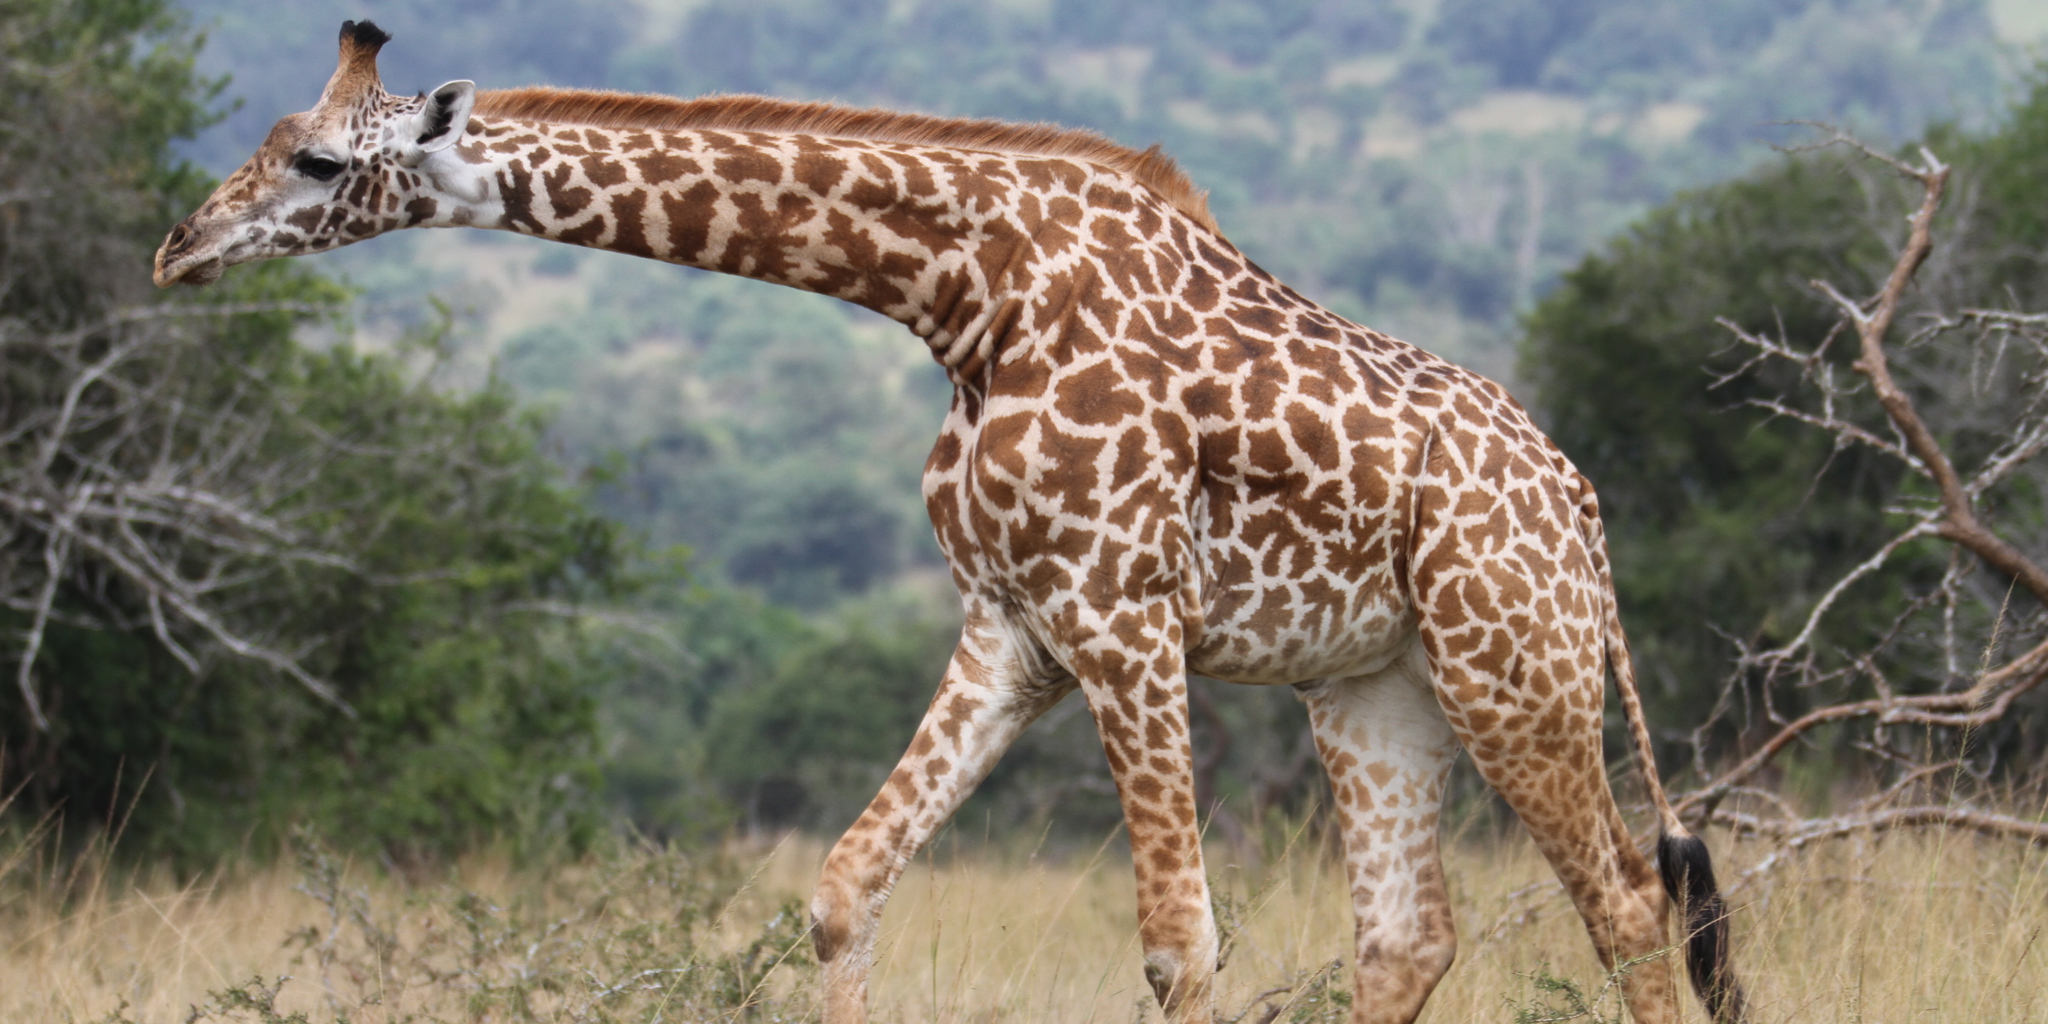 giraffe, akagera national park, rwanda safari vacations